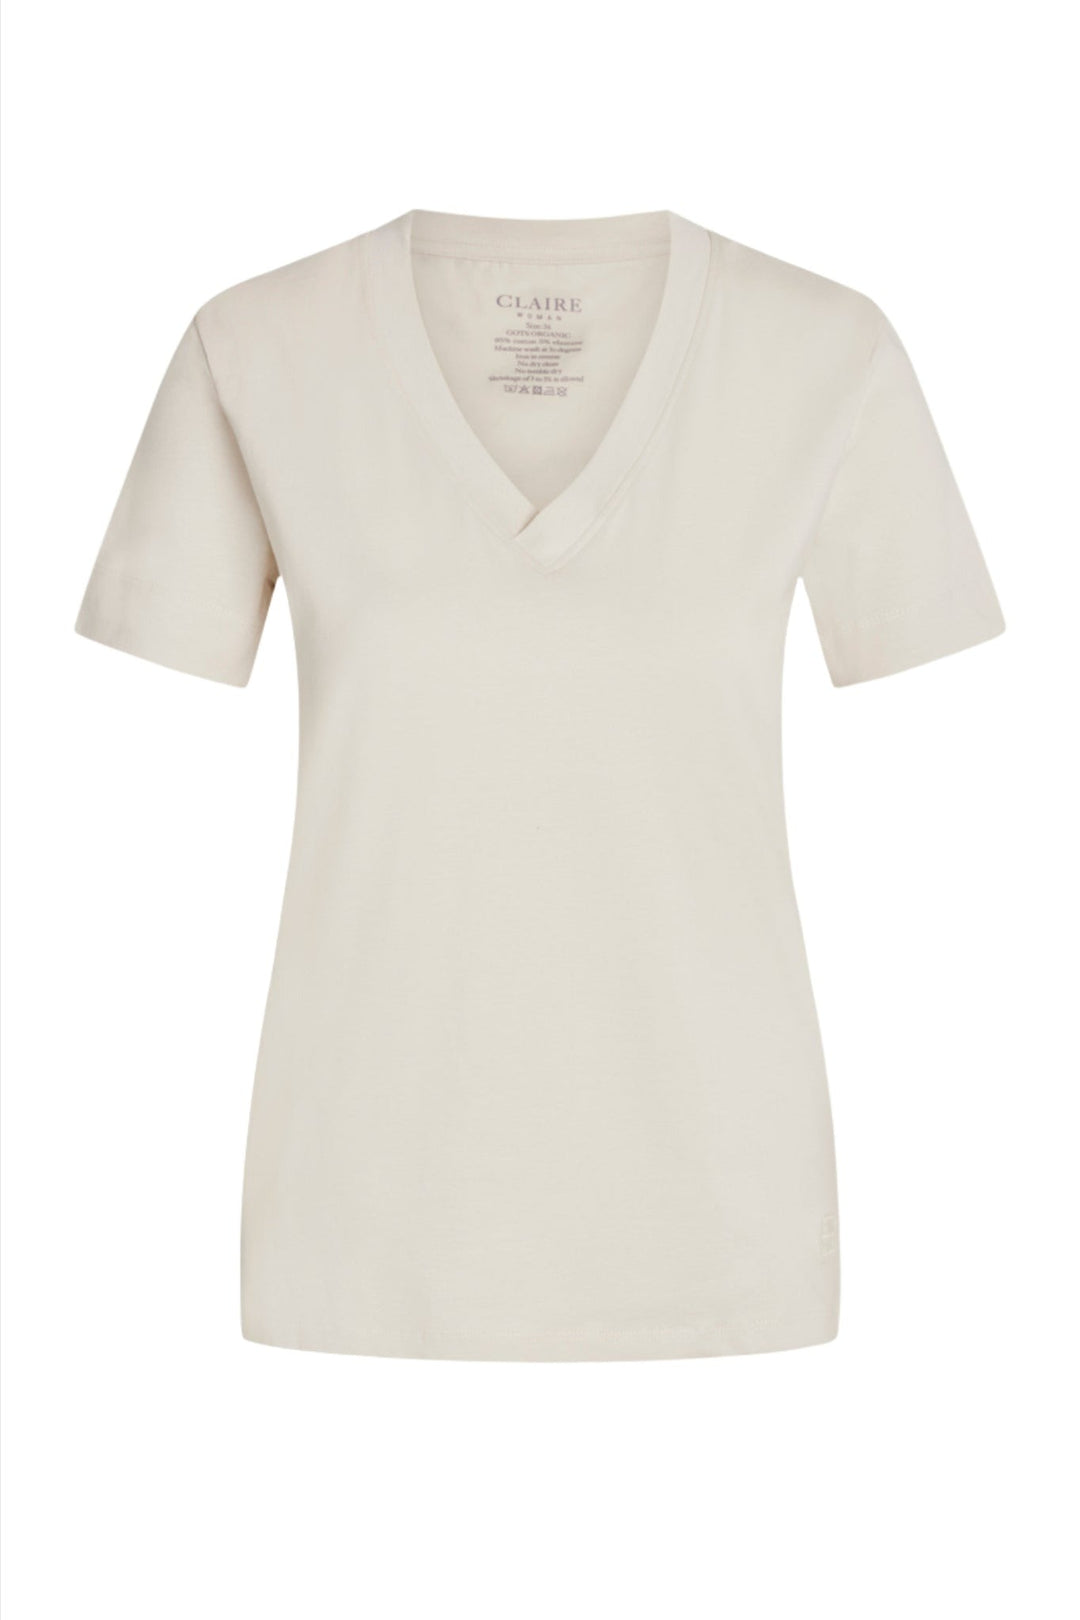 Aurora-Cw T-Shirt Sand Stone | Skjorter og bluser | Smuk - Dameklær på nett